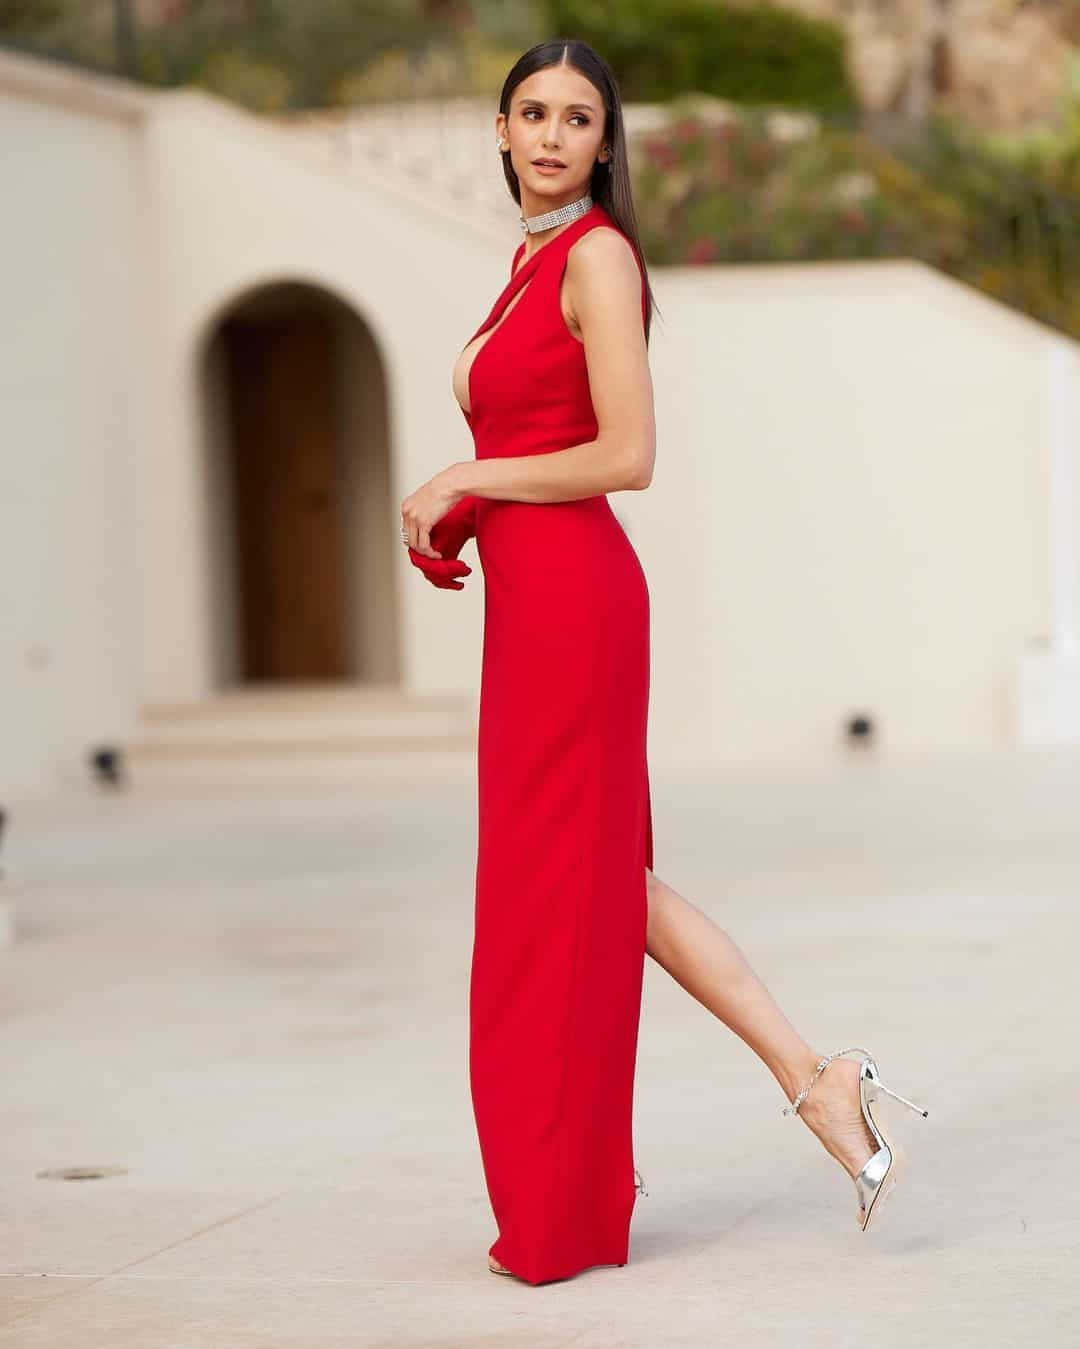 Imagende Modelo Sexy Con Vestido Largo Rojo